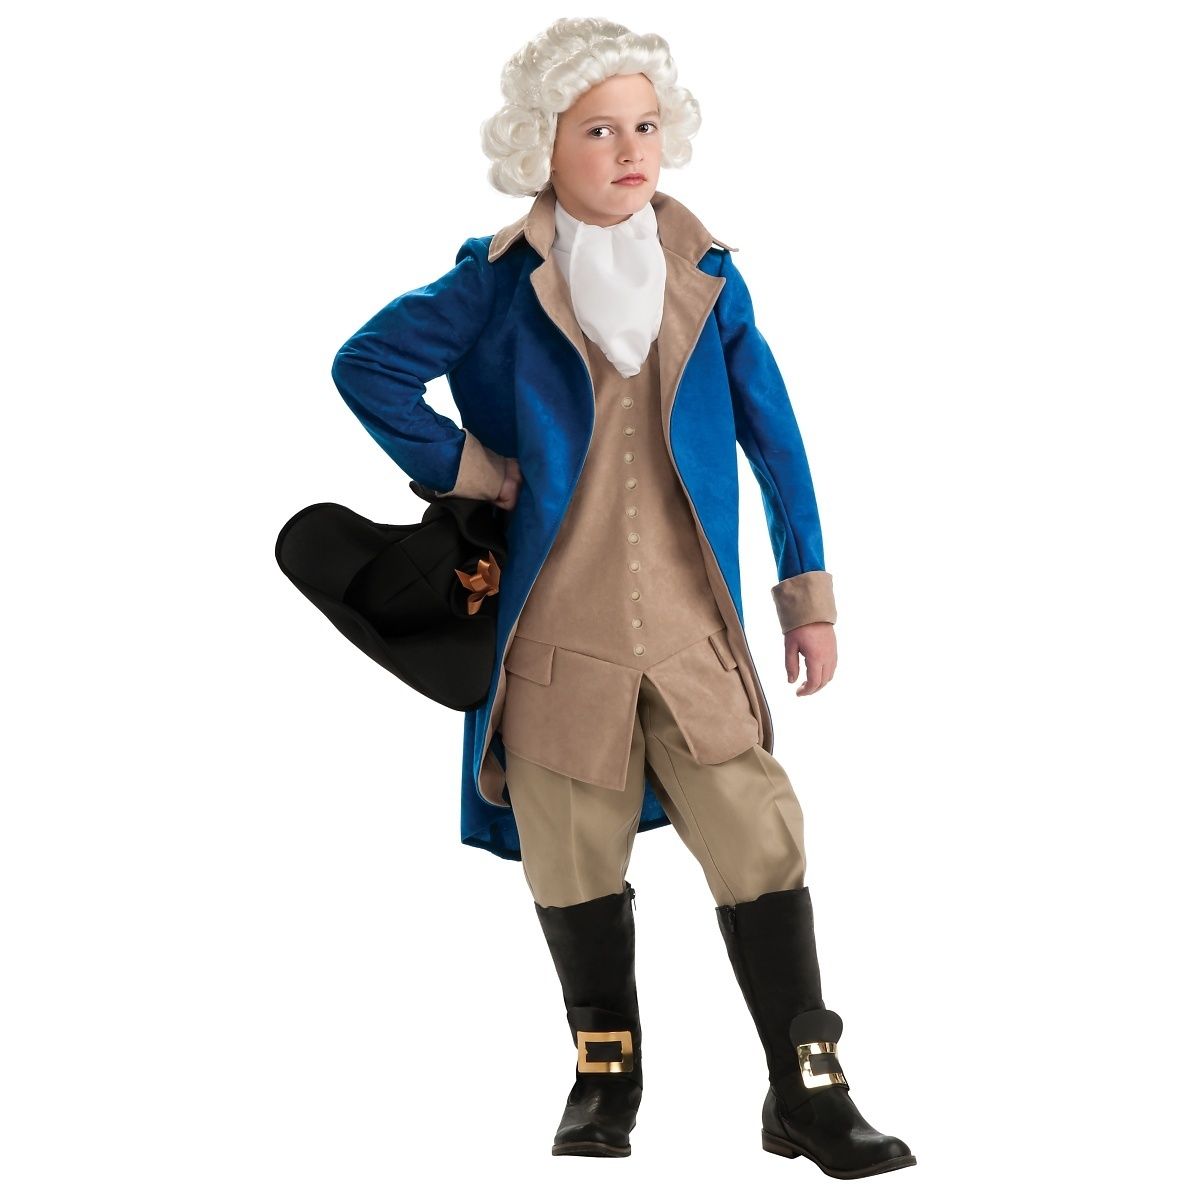 George Washington Costume - Bargainwizz